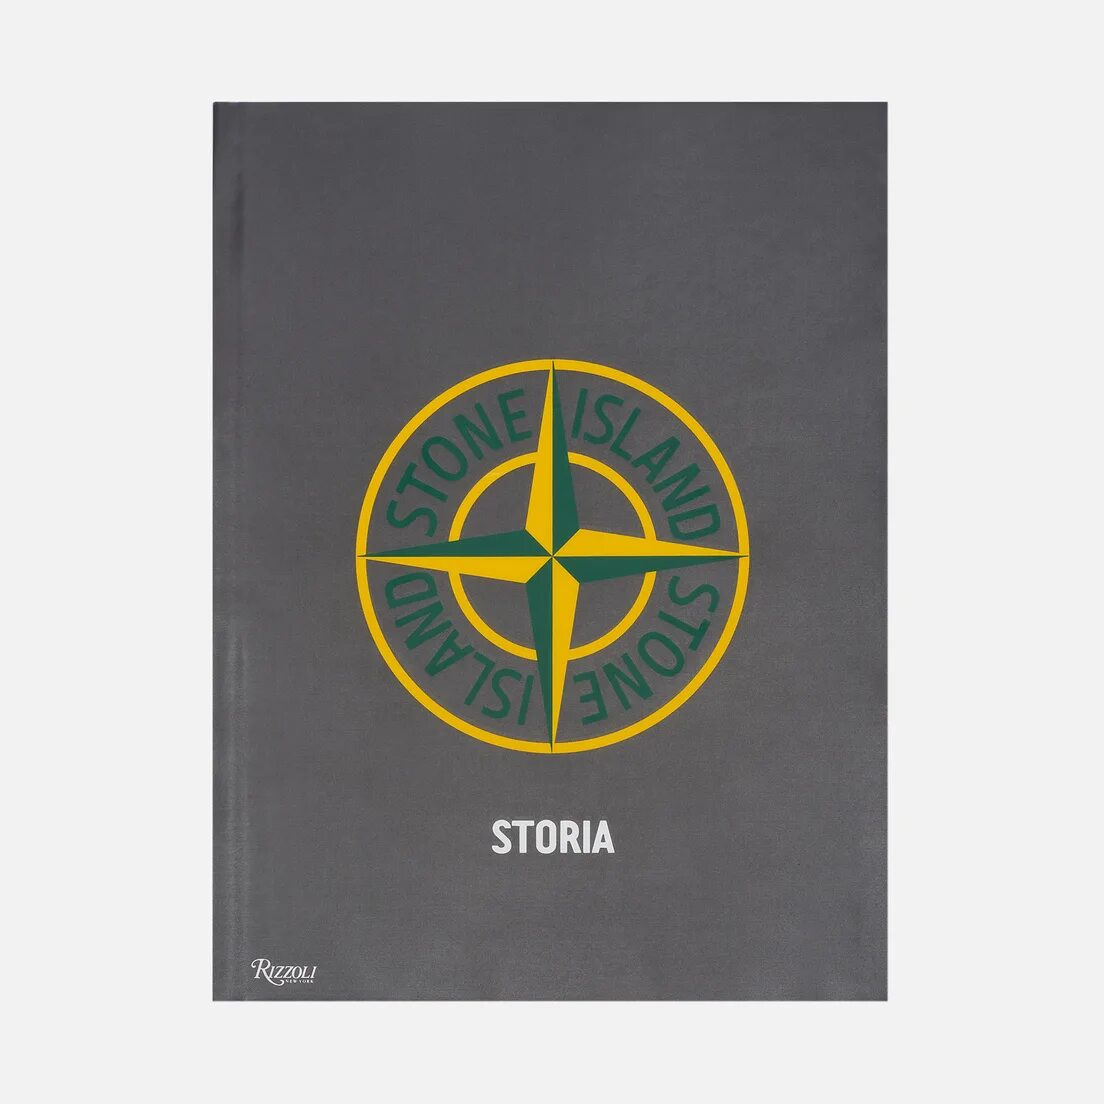 Книга stoned. Книга Stone Island. Книга Stone Island storia. Rizzoli книга Stone Island. Стоник.